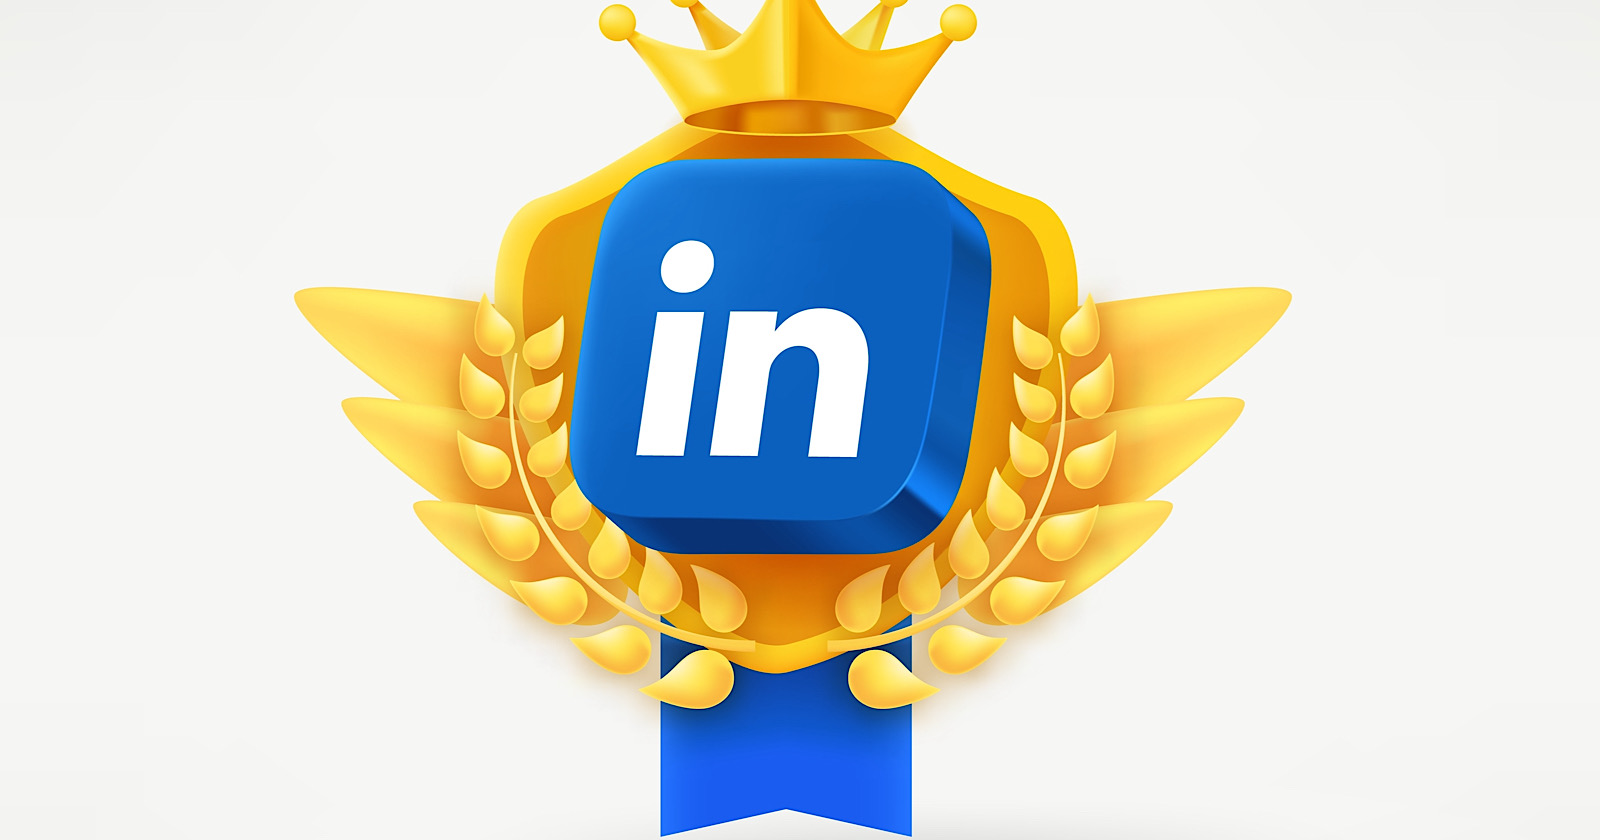 Linkedin application 3d icon on golden emblem.